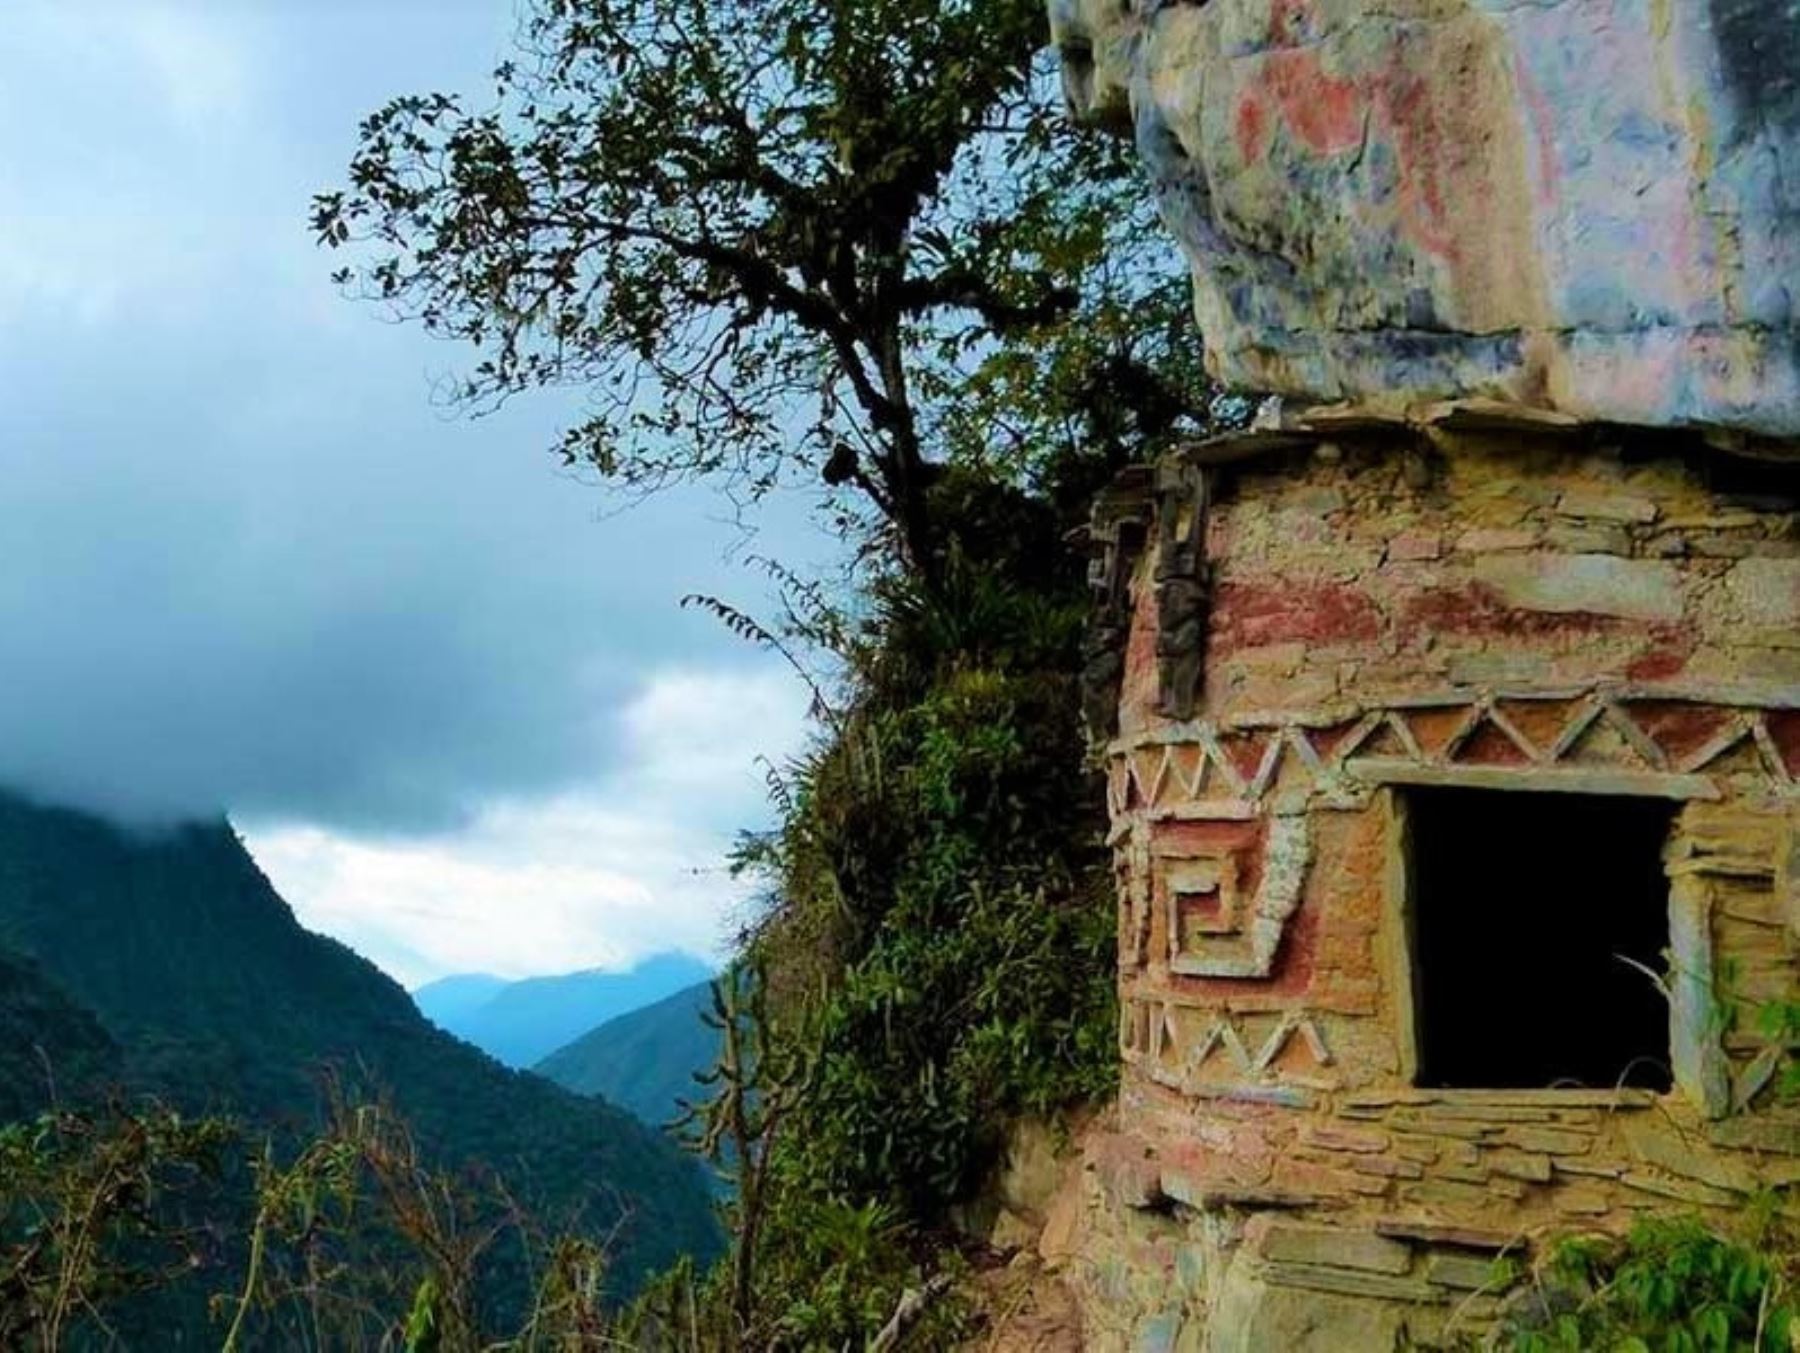 El Gobierno Regional de San Martín y la Unesco articulan esfuerzos para el desarrollo integral y puesta en valor del Gran Pajatén, el sitio arqueológico ubicado en el interior del Parque Nacional Río Abiseo. ANDINA/Difusión